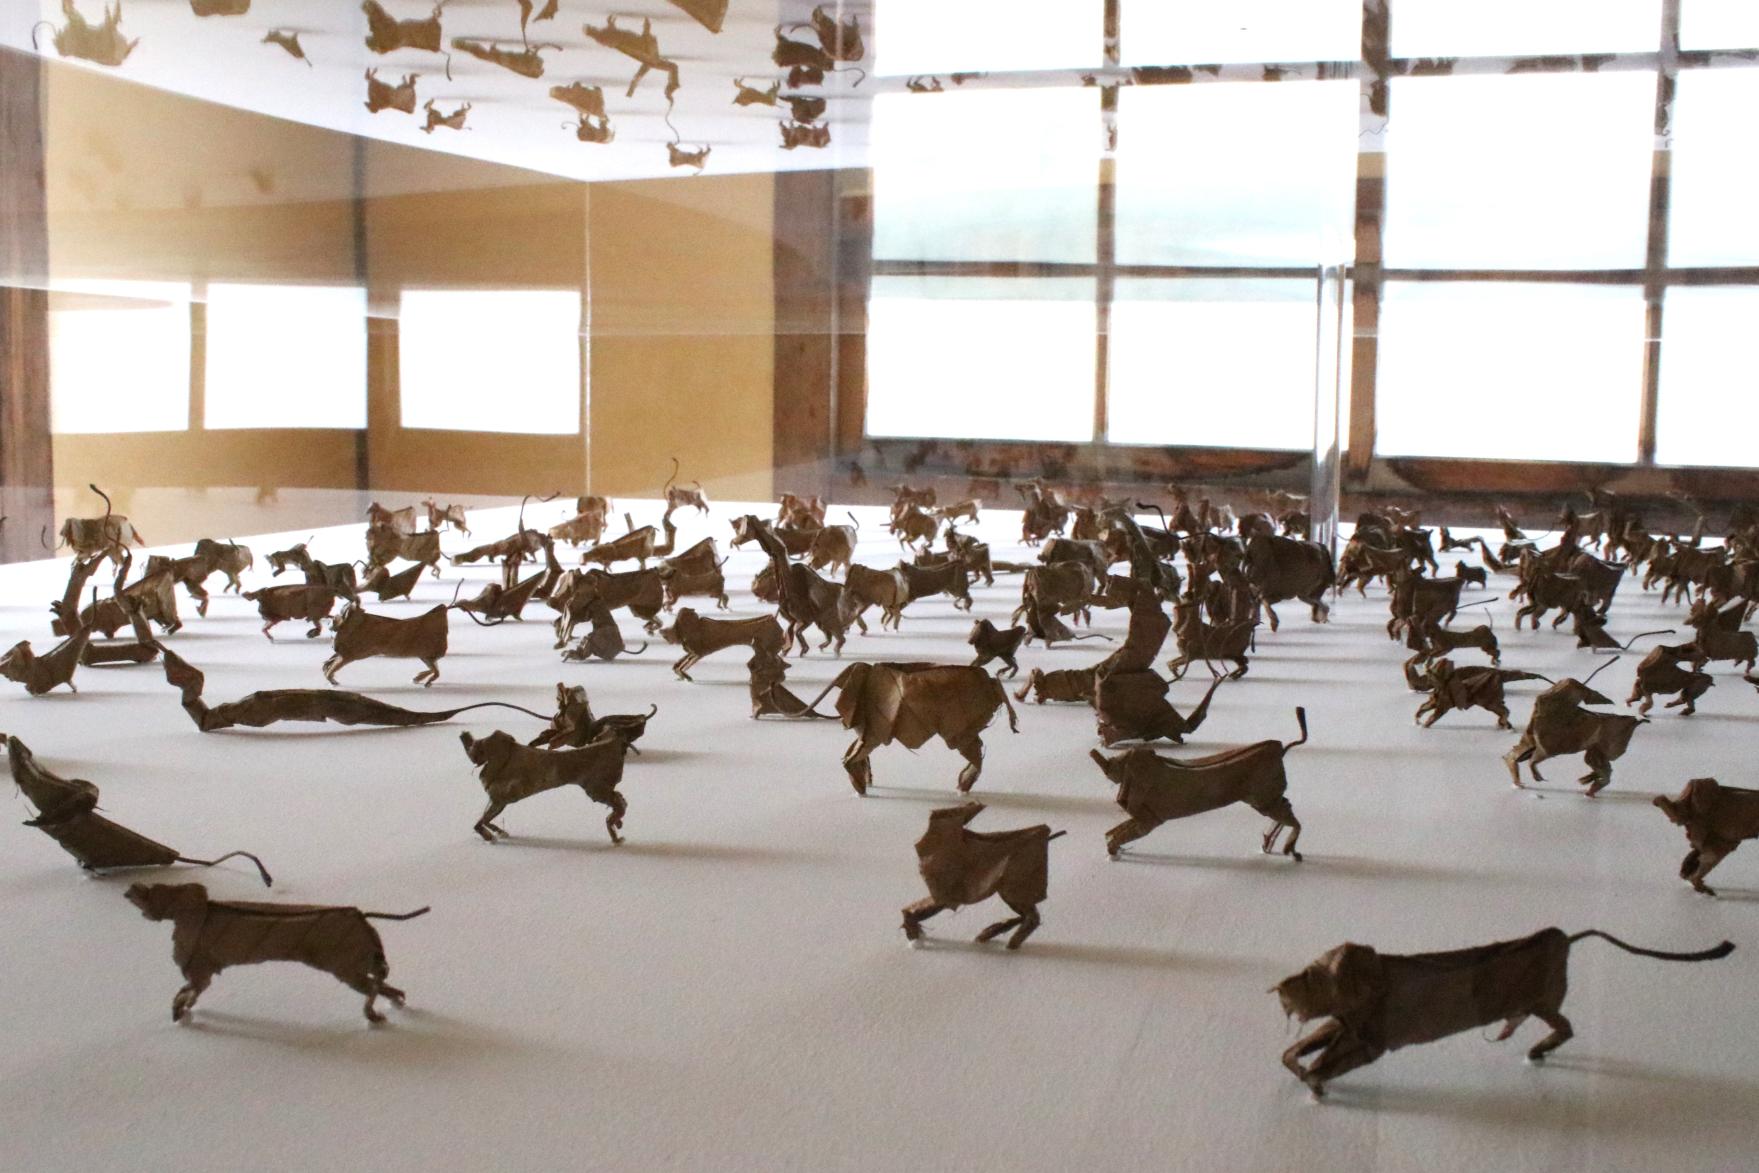 中島閘門 操作室 展示風景より、渡邊義紘《折り葉の動物たち》2012-2022